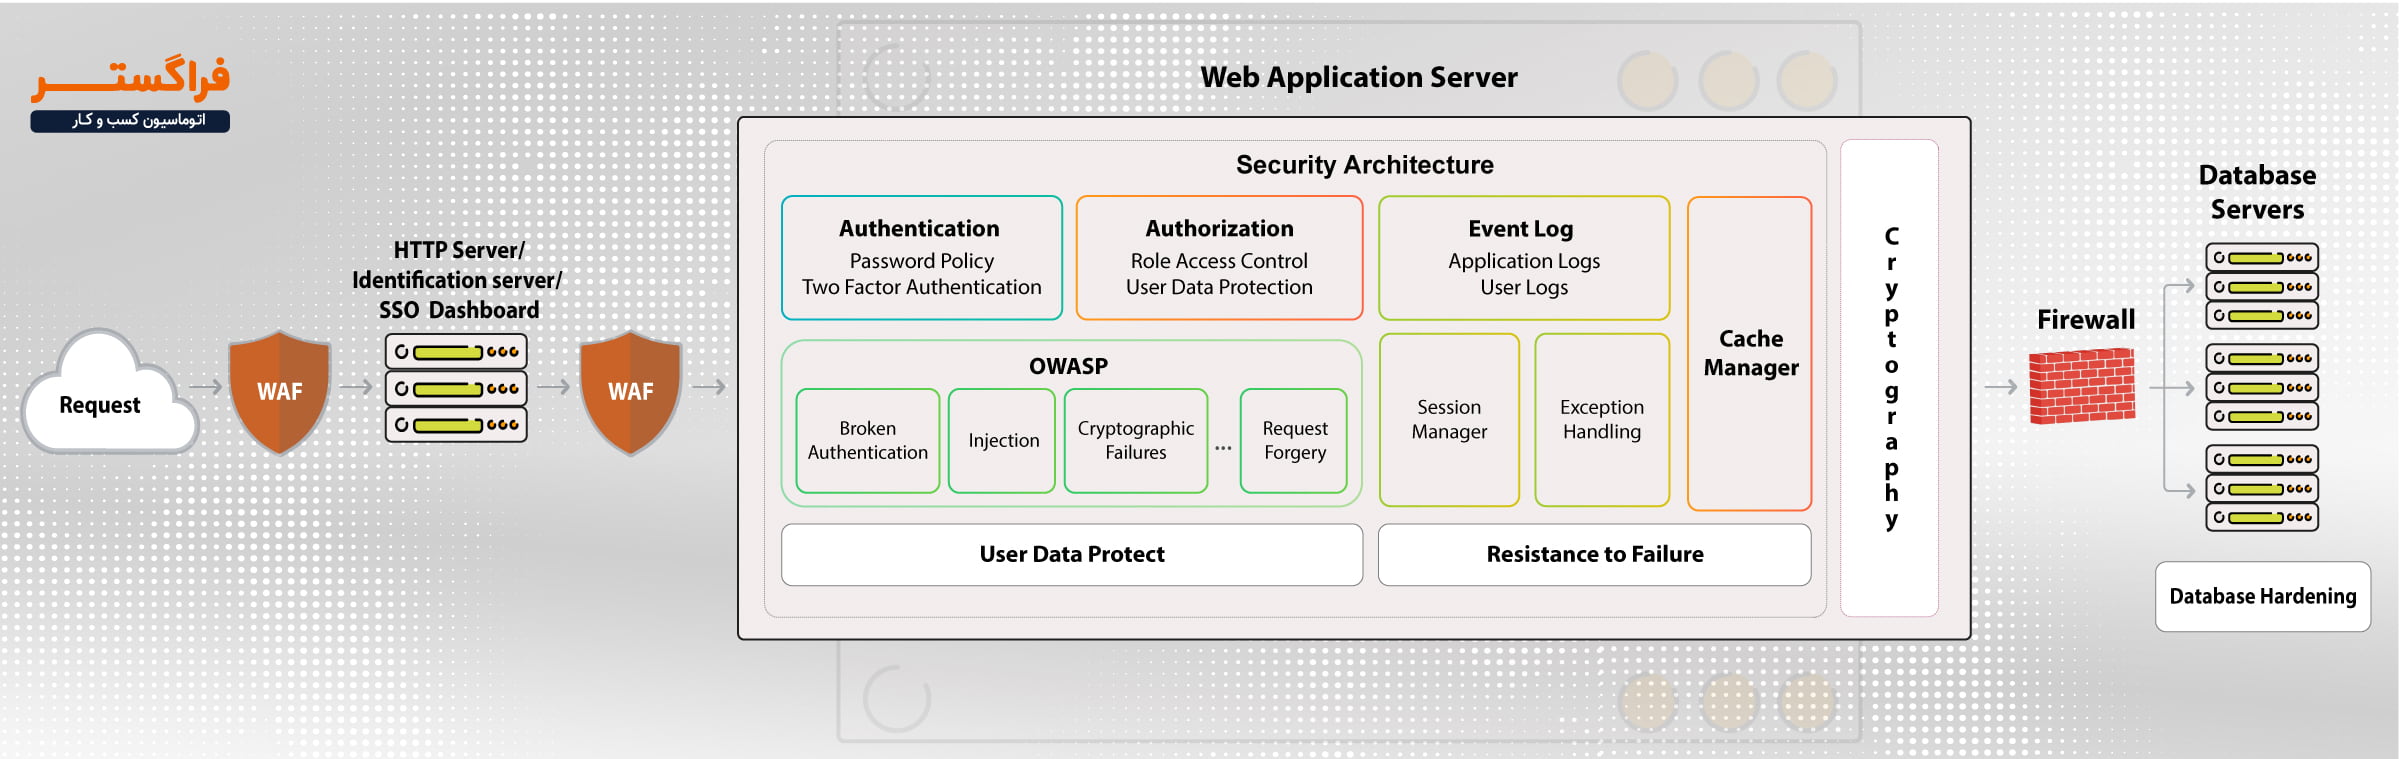 نقشه راه معماری امنیتی نرم افزار